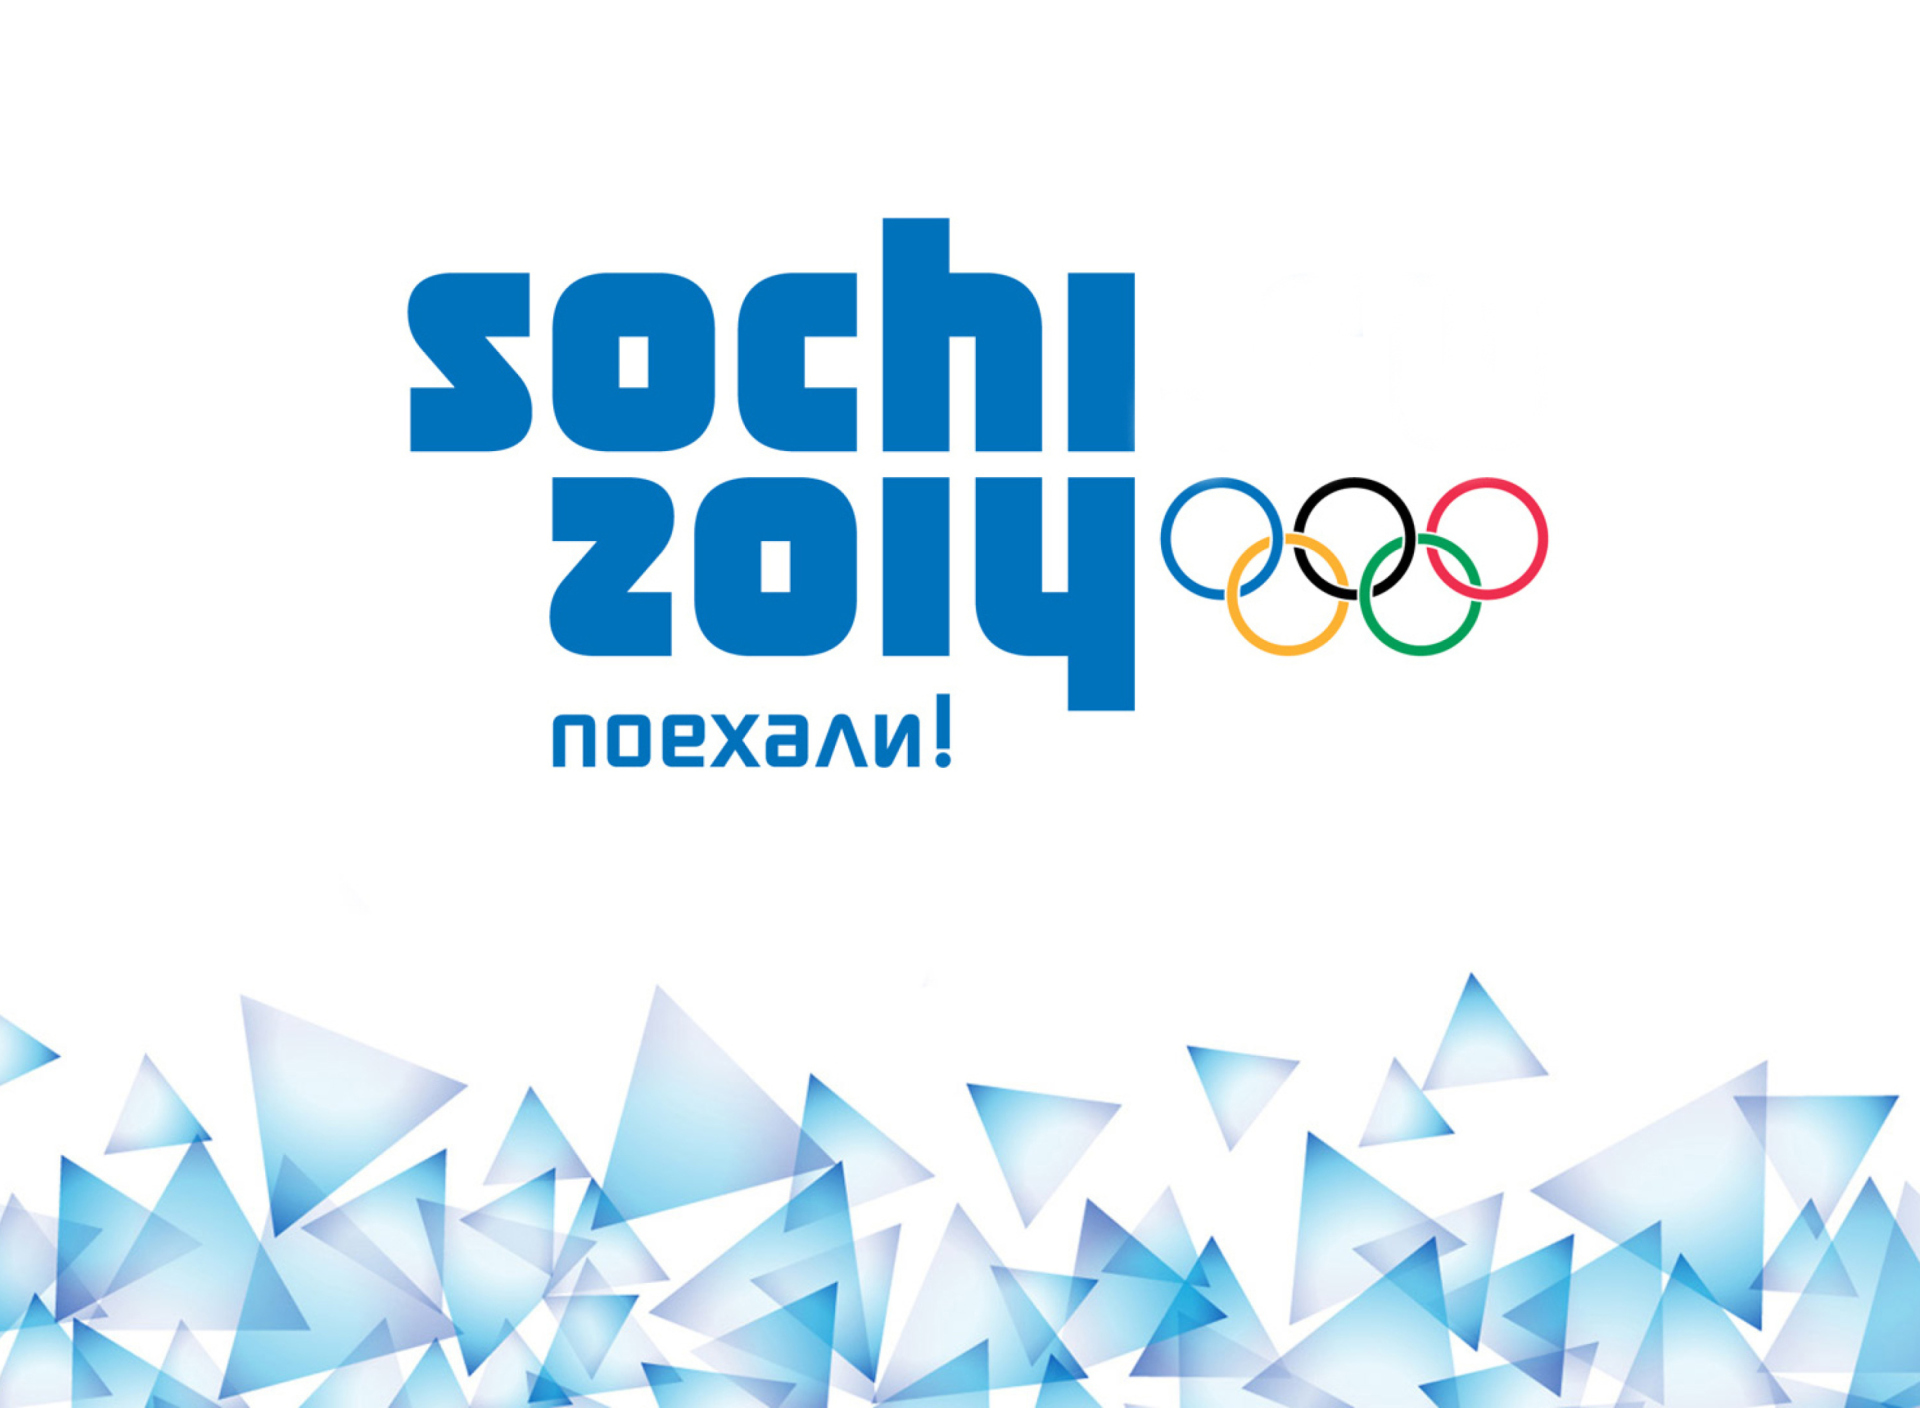 Winter Olympics In Sochi Russia 2014 wallpaper 1920x1408